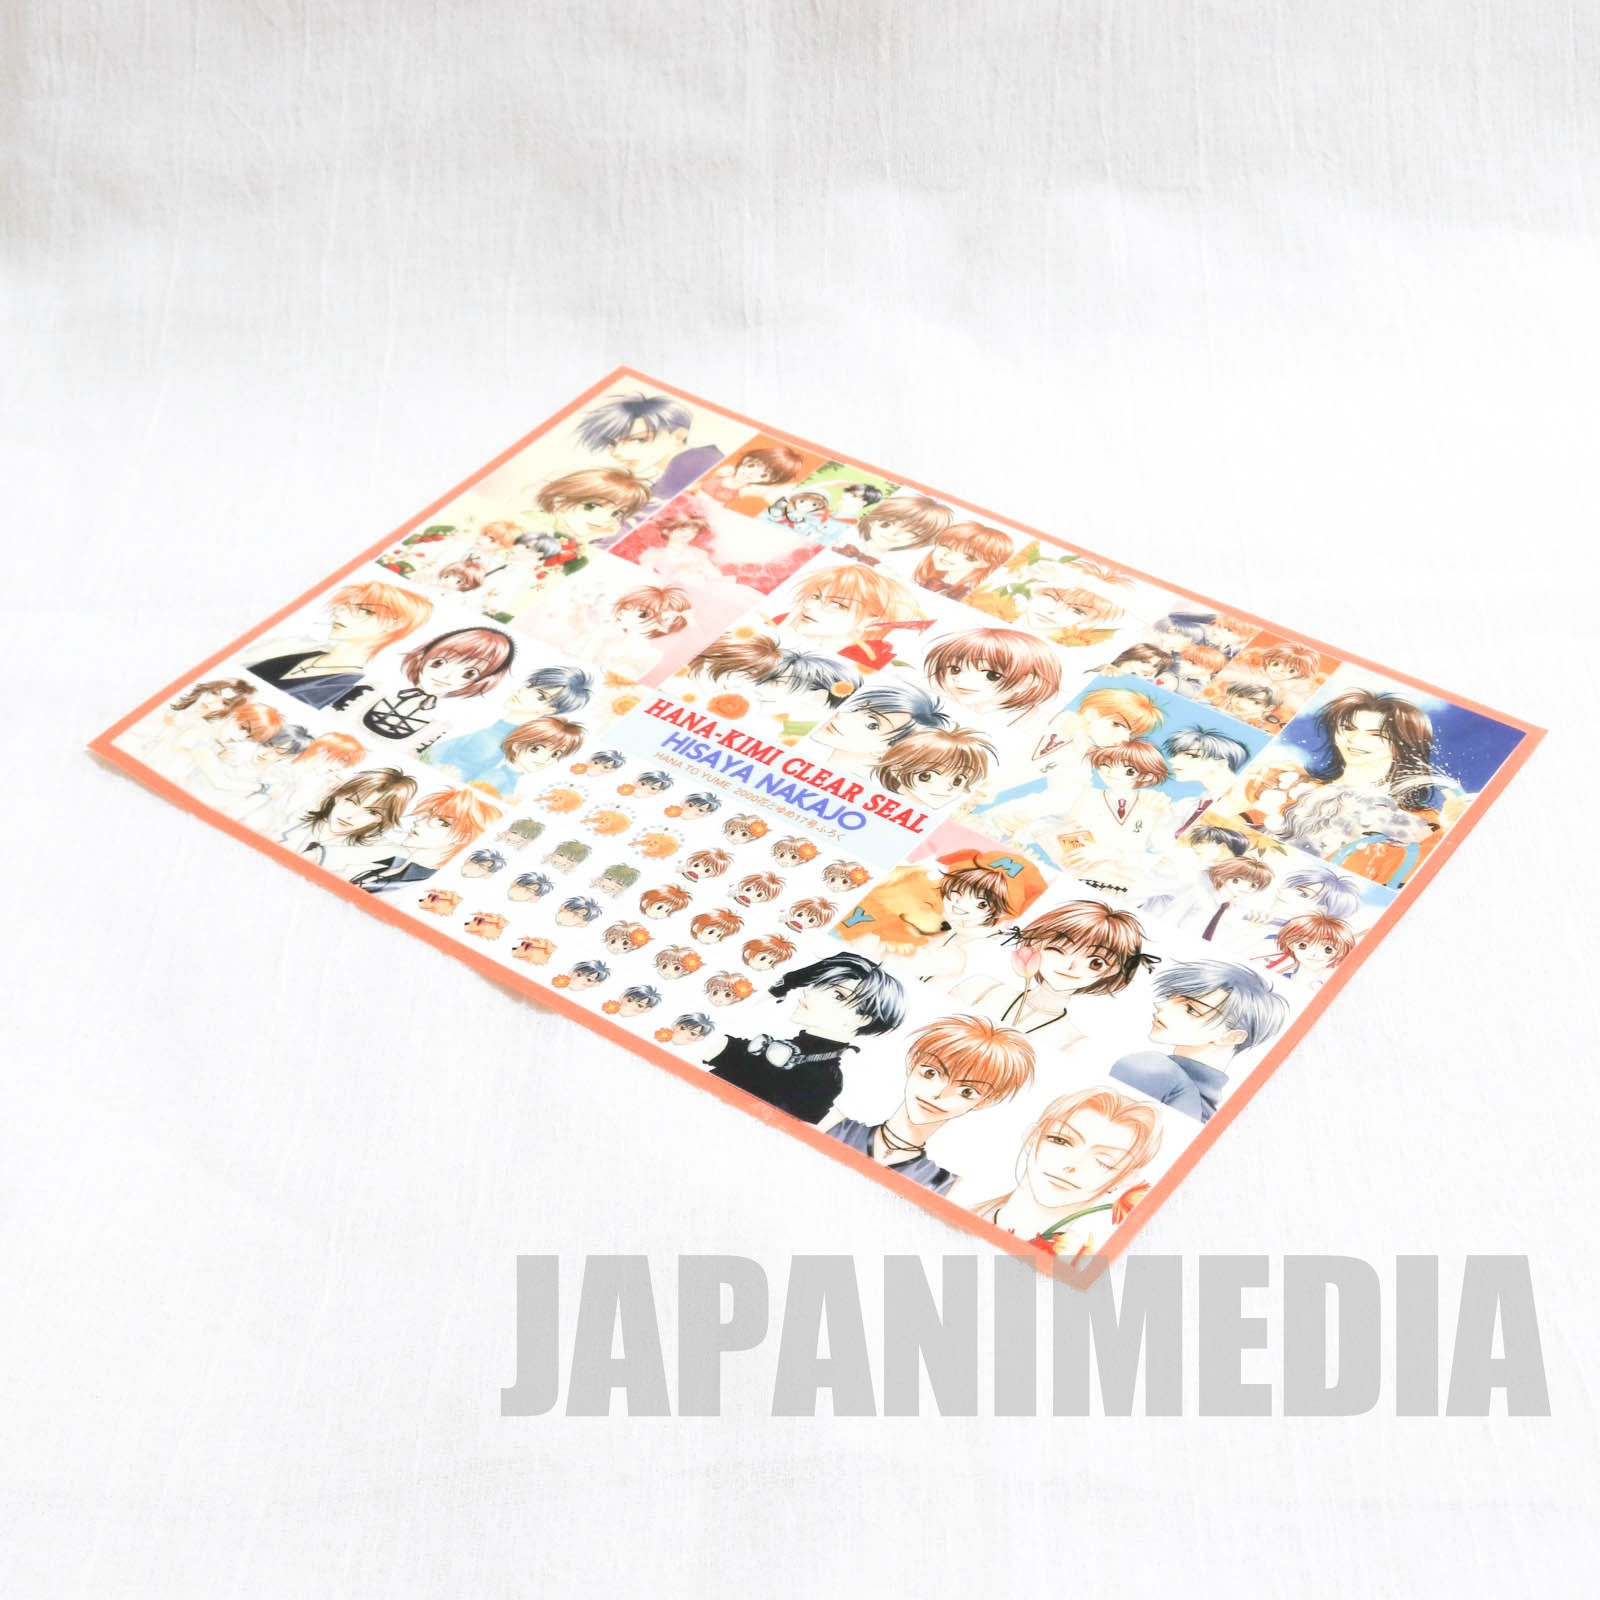 Hana-Kimi Sticker Sheet JAPAN MANGA